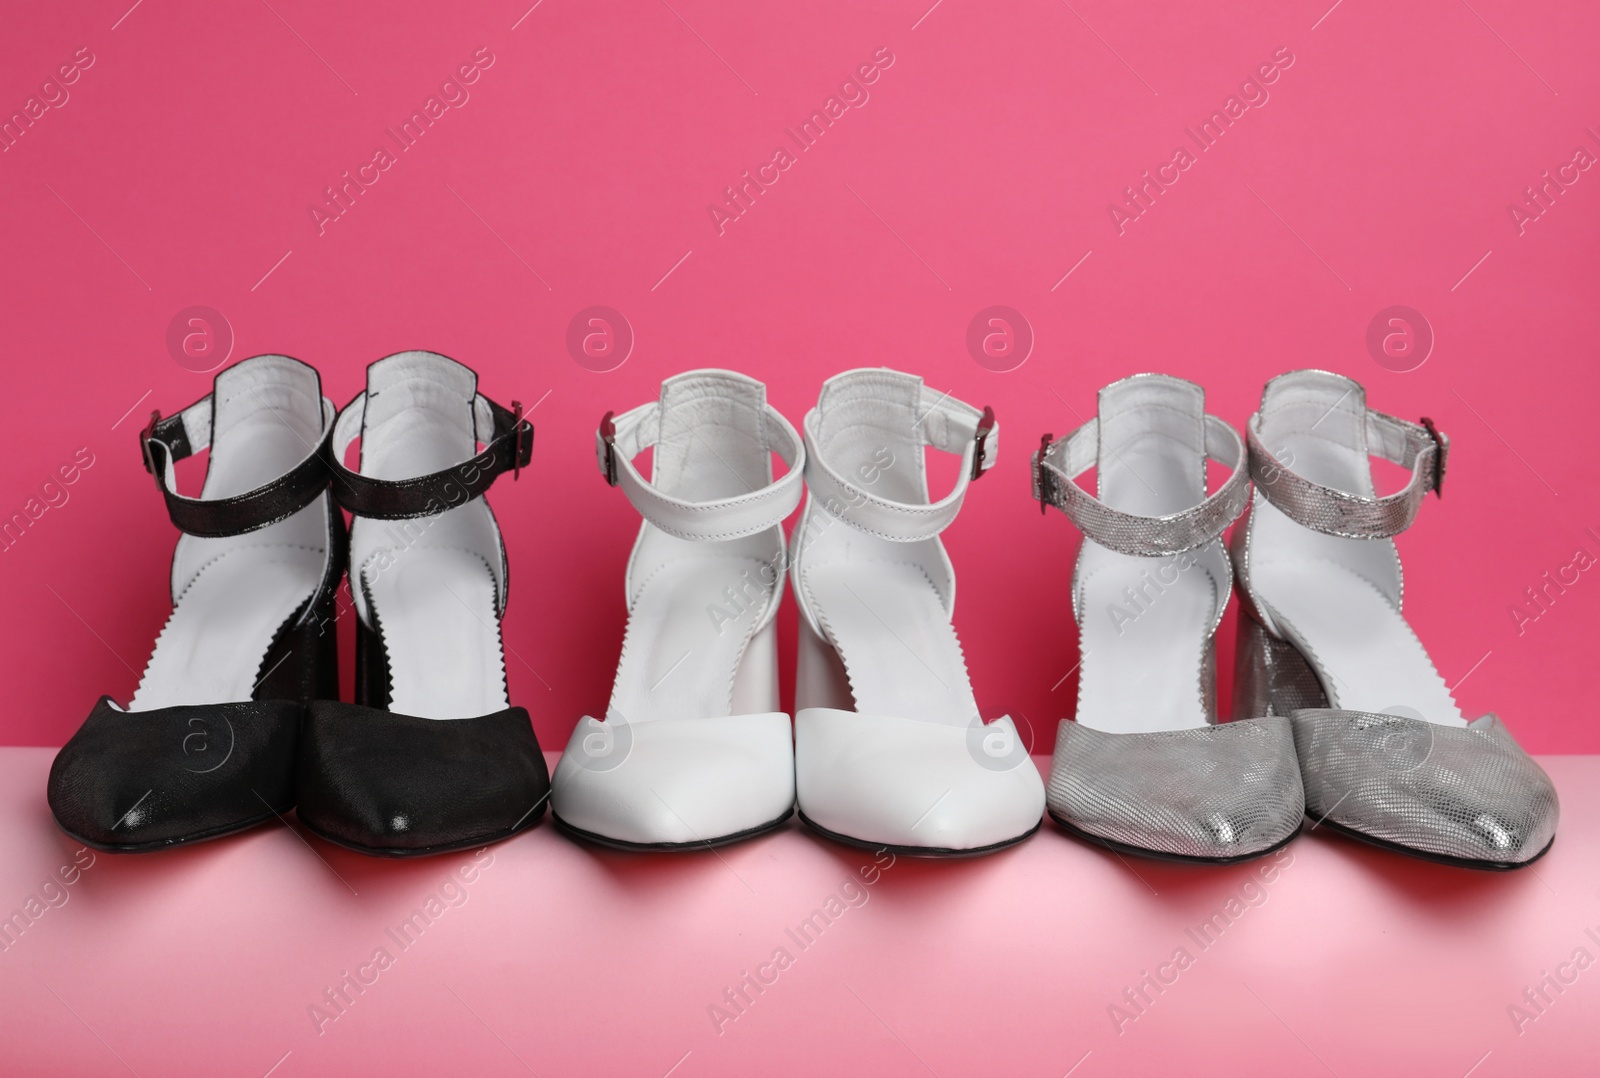 Photo of Many stylish female shoes on pink background